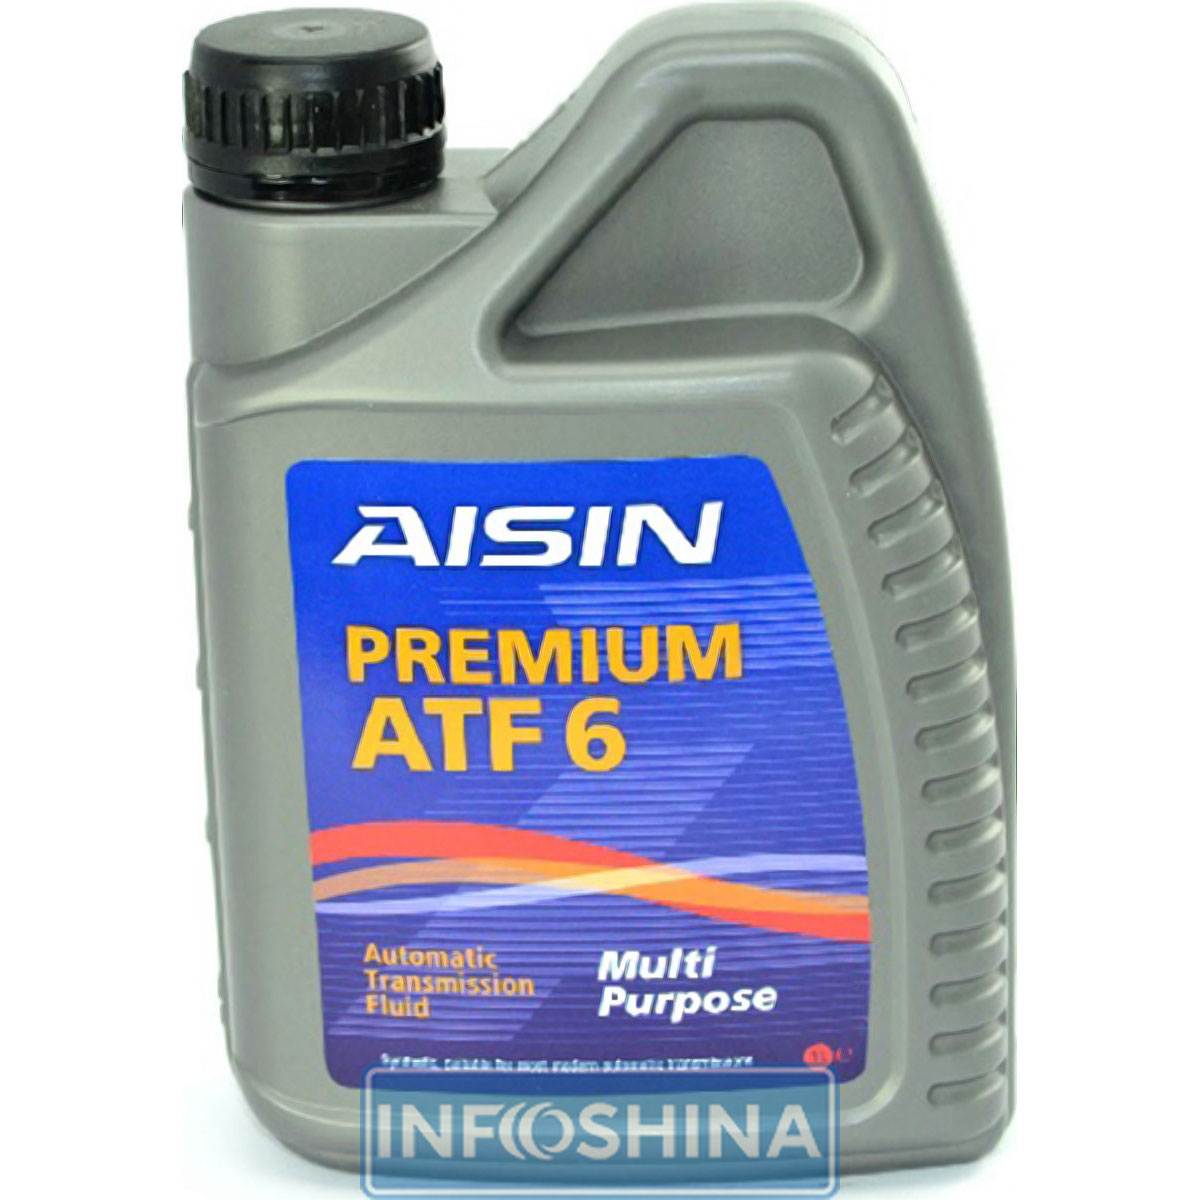 AISIN ATF6 Dexron-III